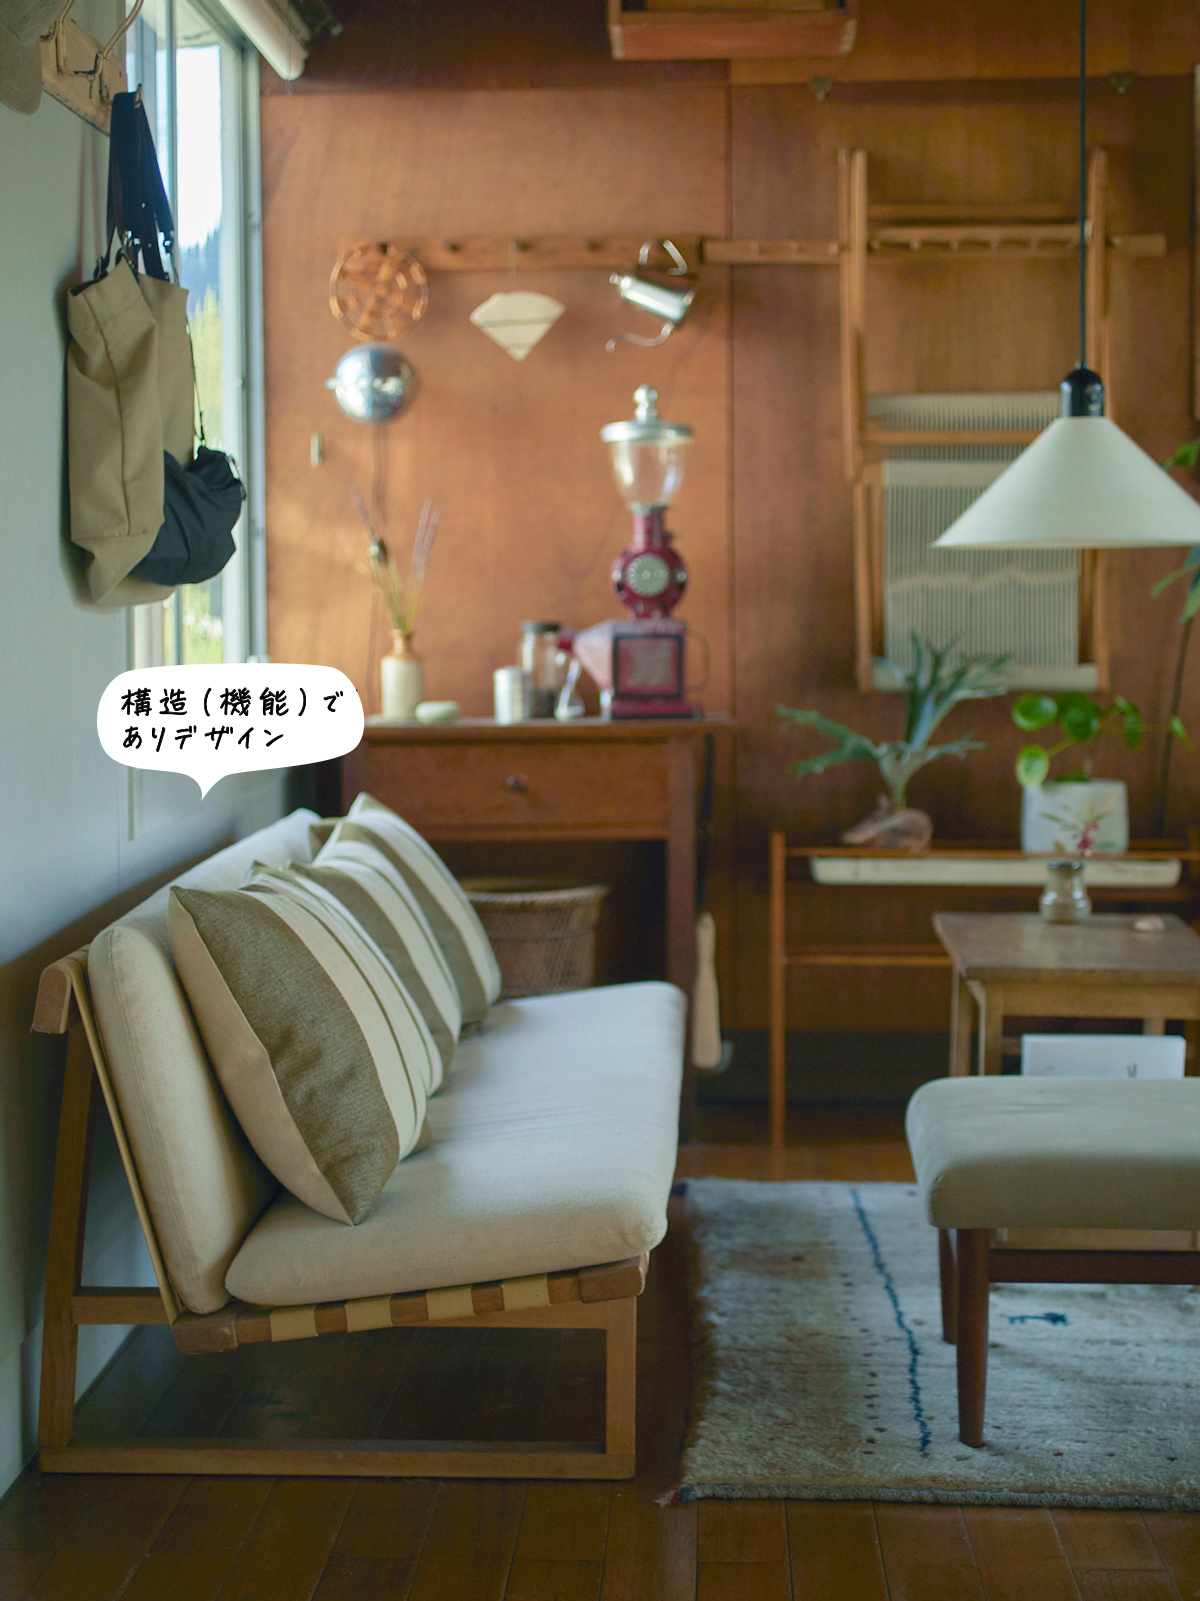 REFACTORY antiques・渡邉優太さん自宅リビングのソファ